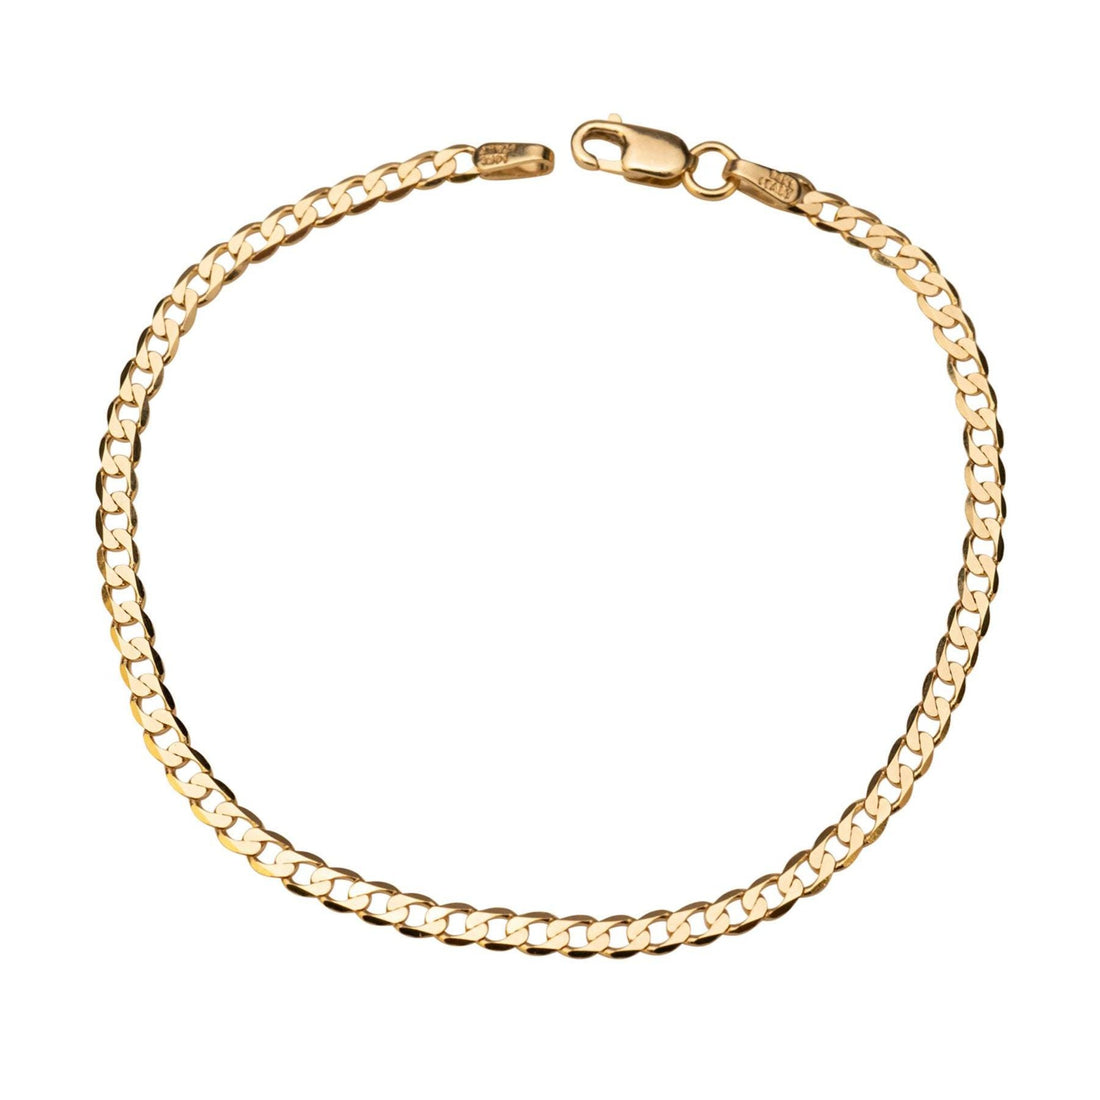 14k Solid Gold Curb Link Bracelet, 14k Gold Bracelet, Simple 14k Bracelet, Miami Link Bracelet, Bracelet, Chain Bracelet, Holiday Gift